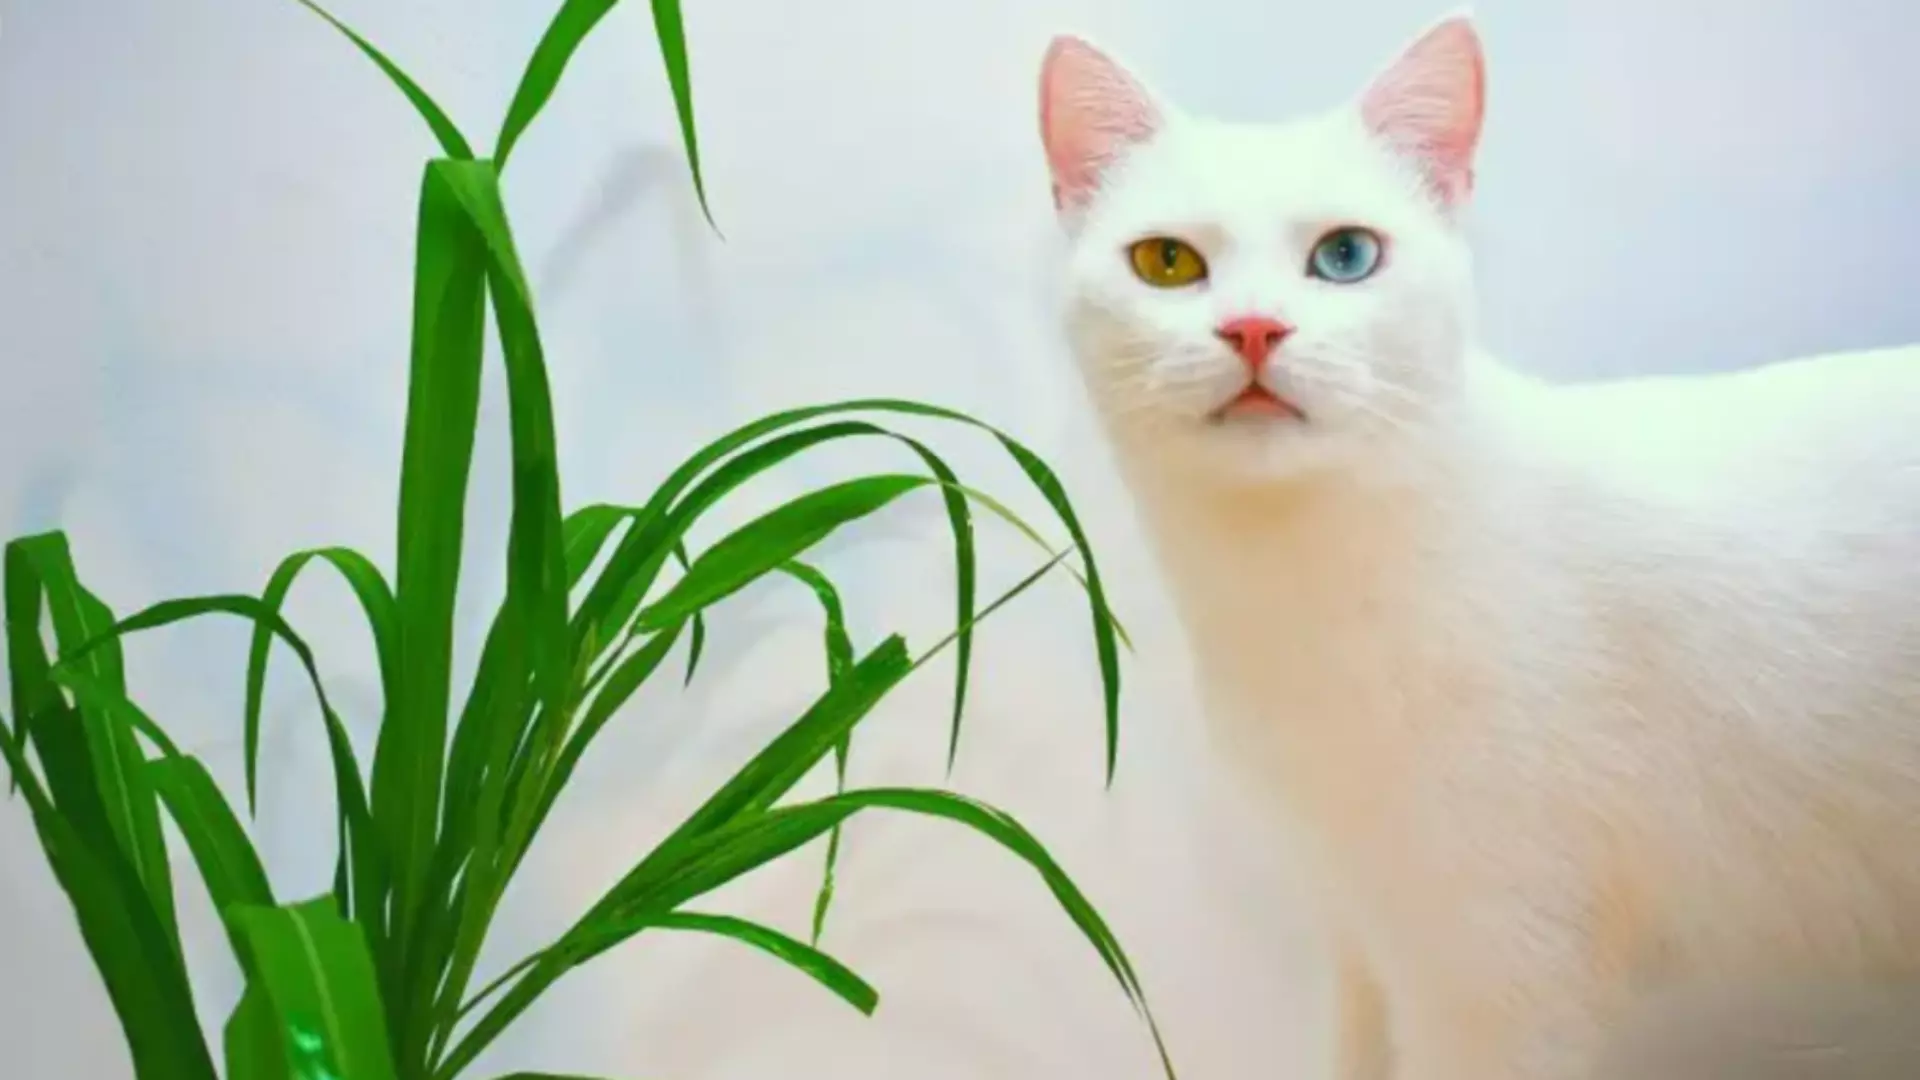 Rośliny bezpieczne dla zwierząt rośliny trujące dla kotów domowy hotel dla zwierząt pethomer odpowiedzialny opiekun kota kot gryzie rośliny